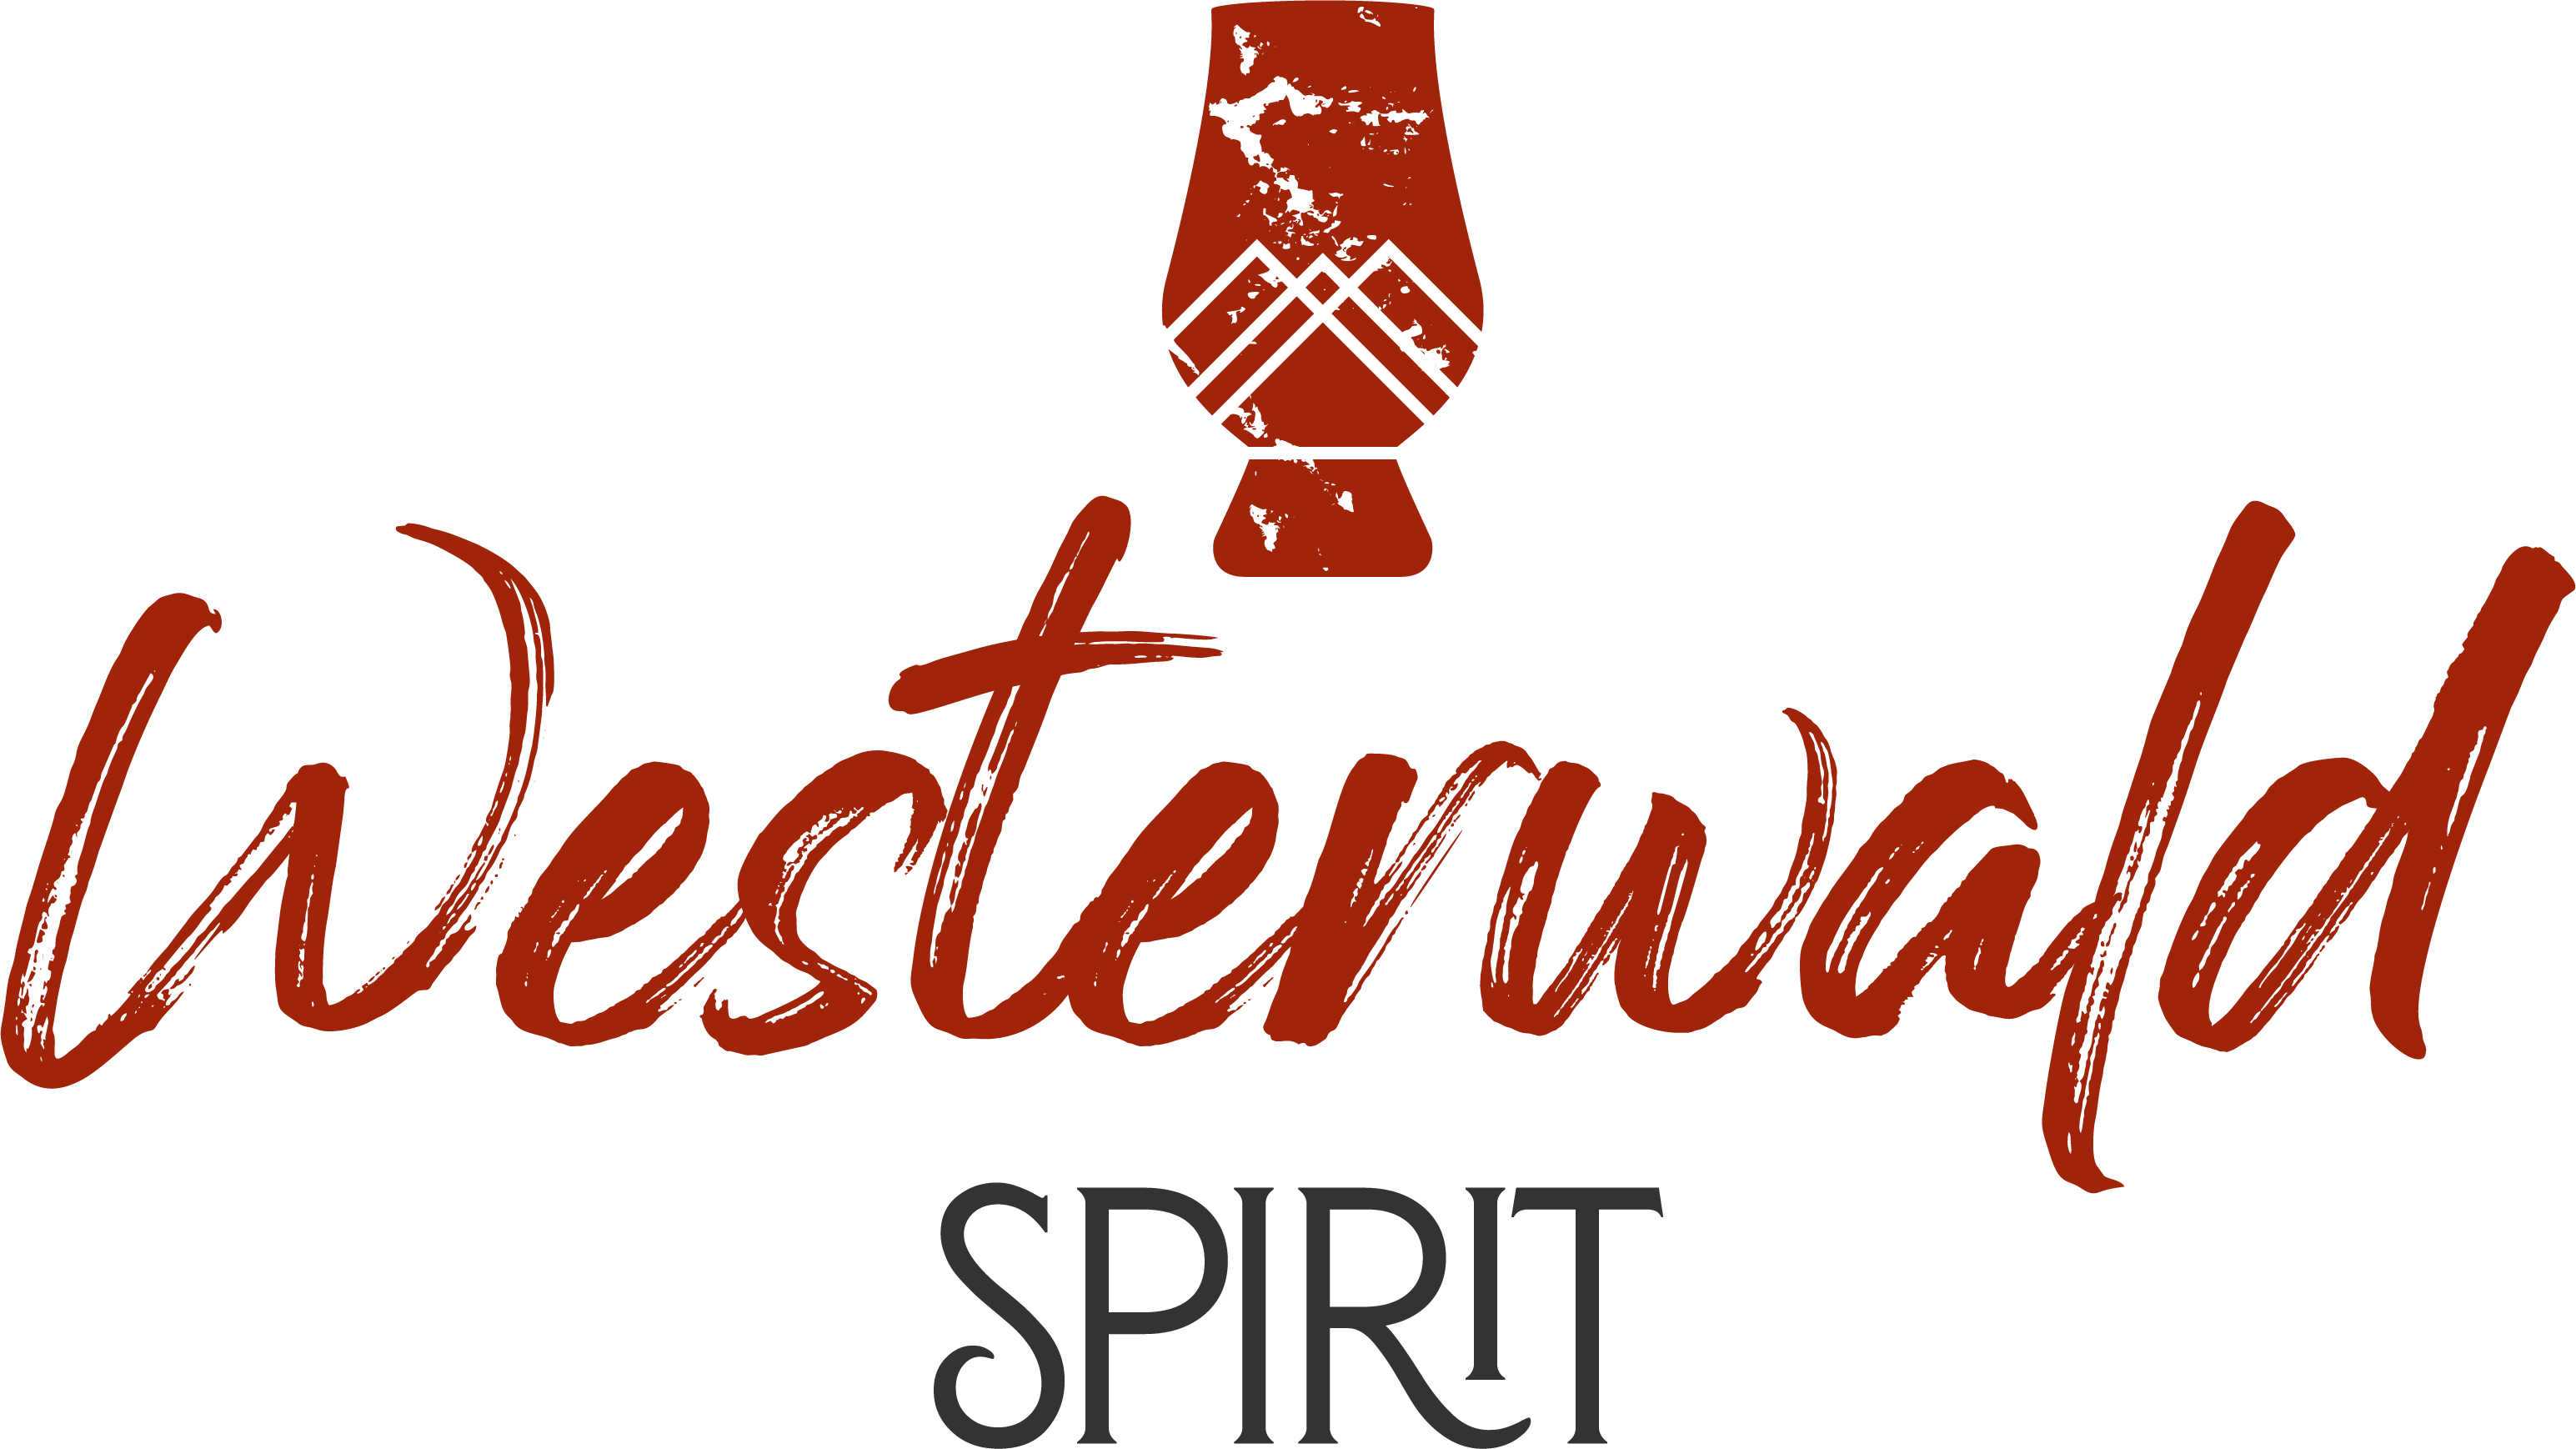 Westerwald-Spirit